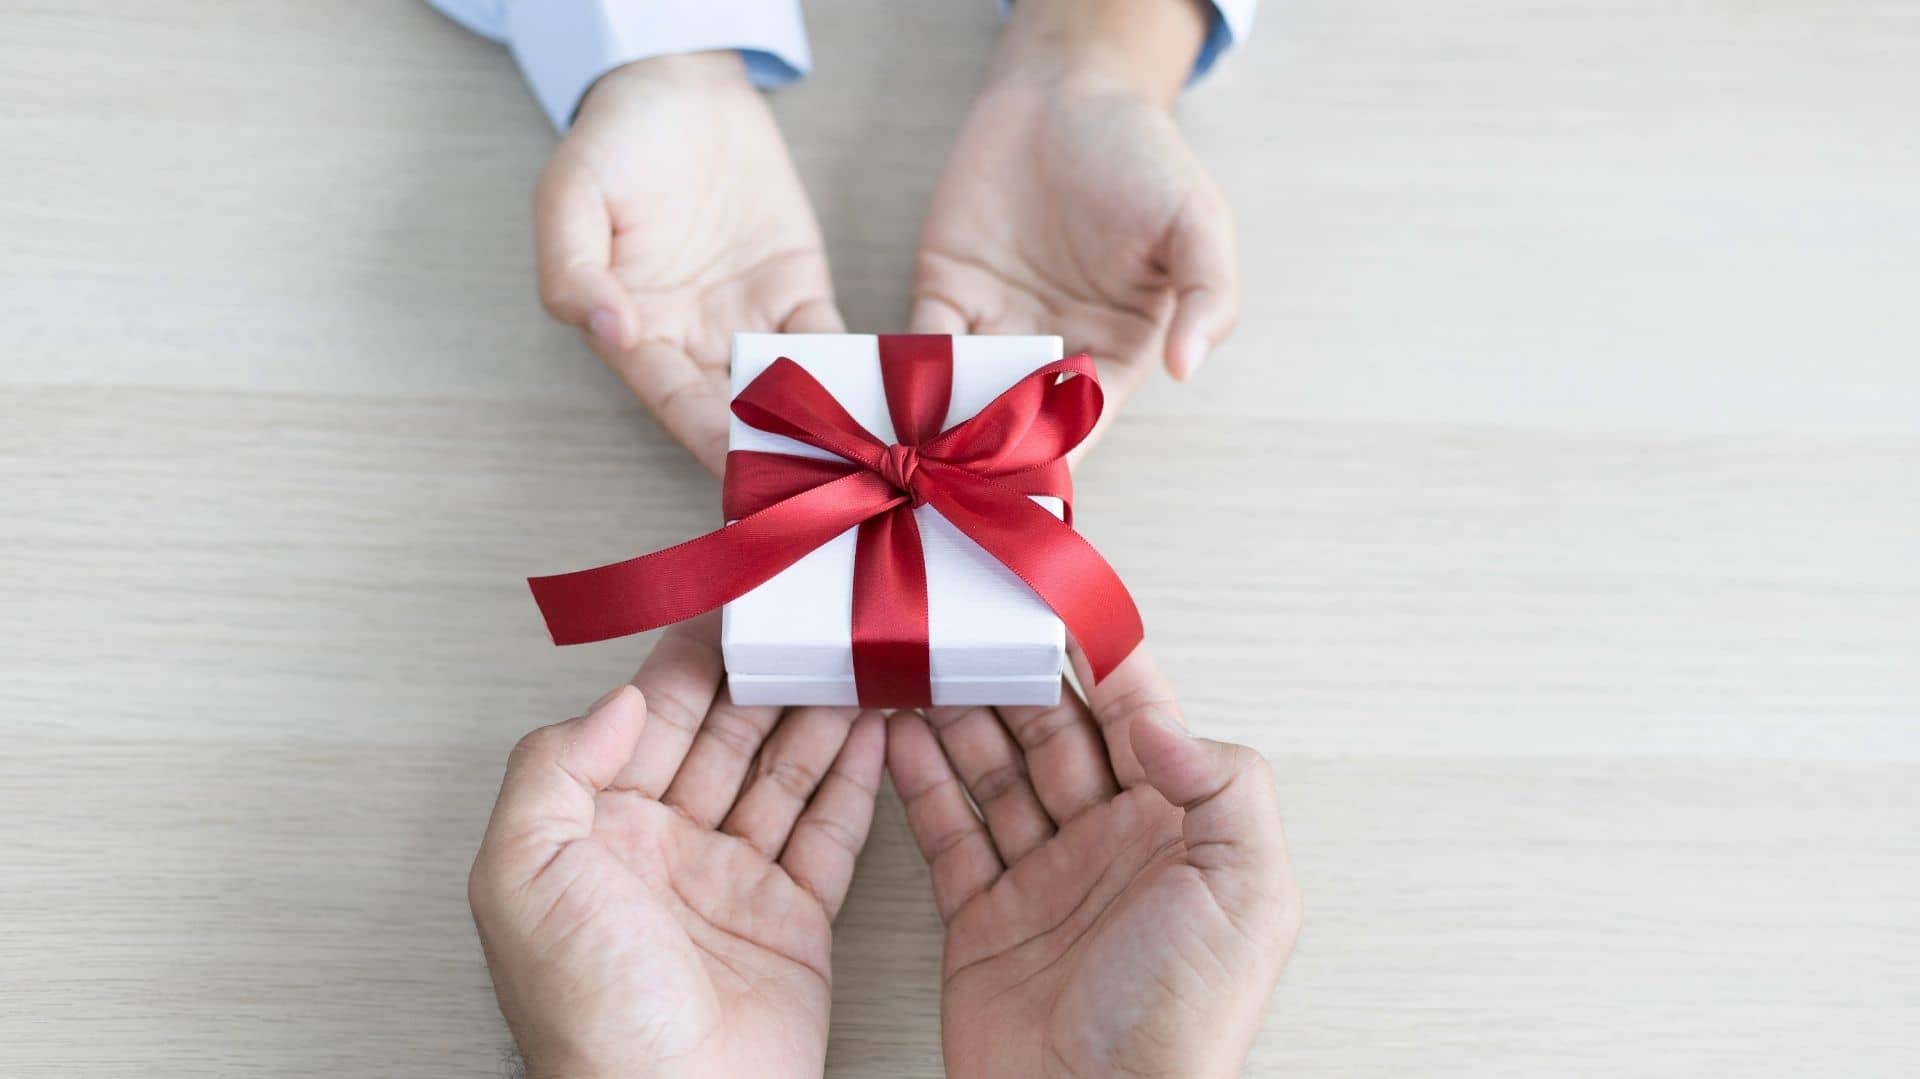 Resonar Impulso mosaico 30 regalos de aniversario para regalar y vender desde casa